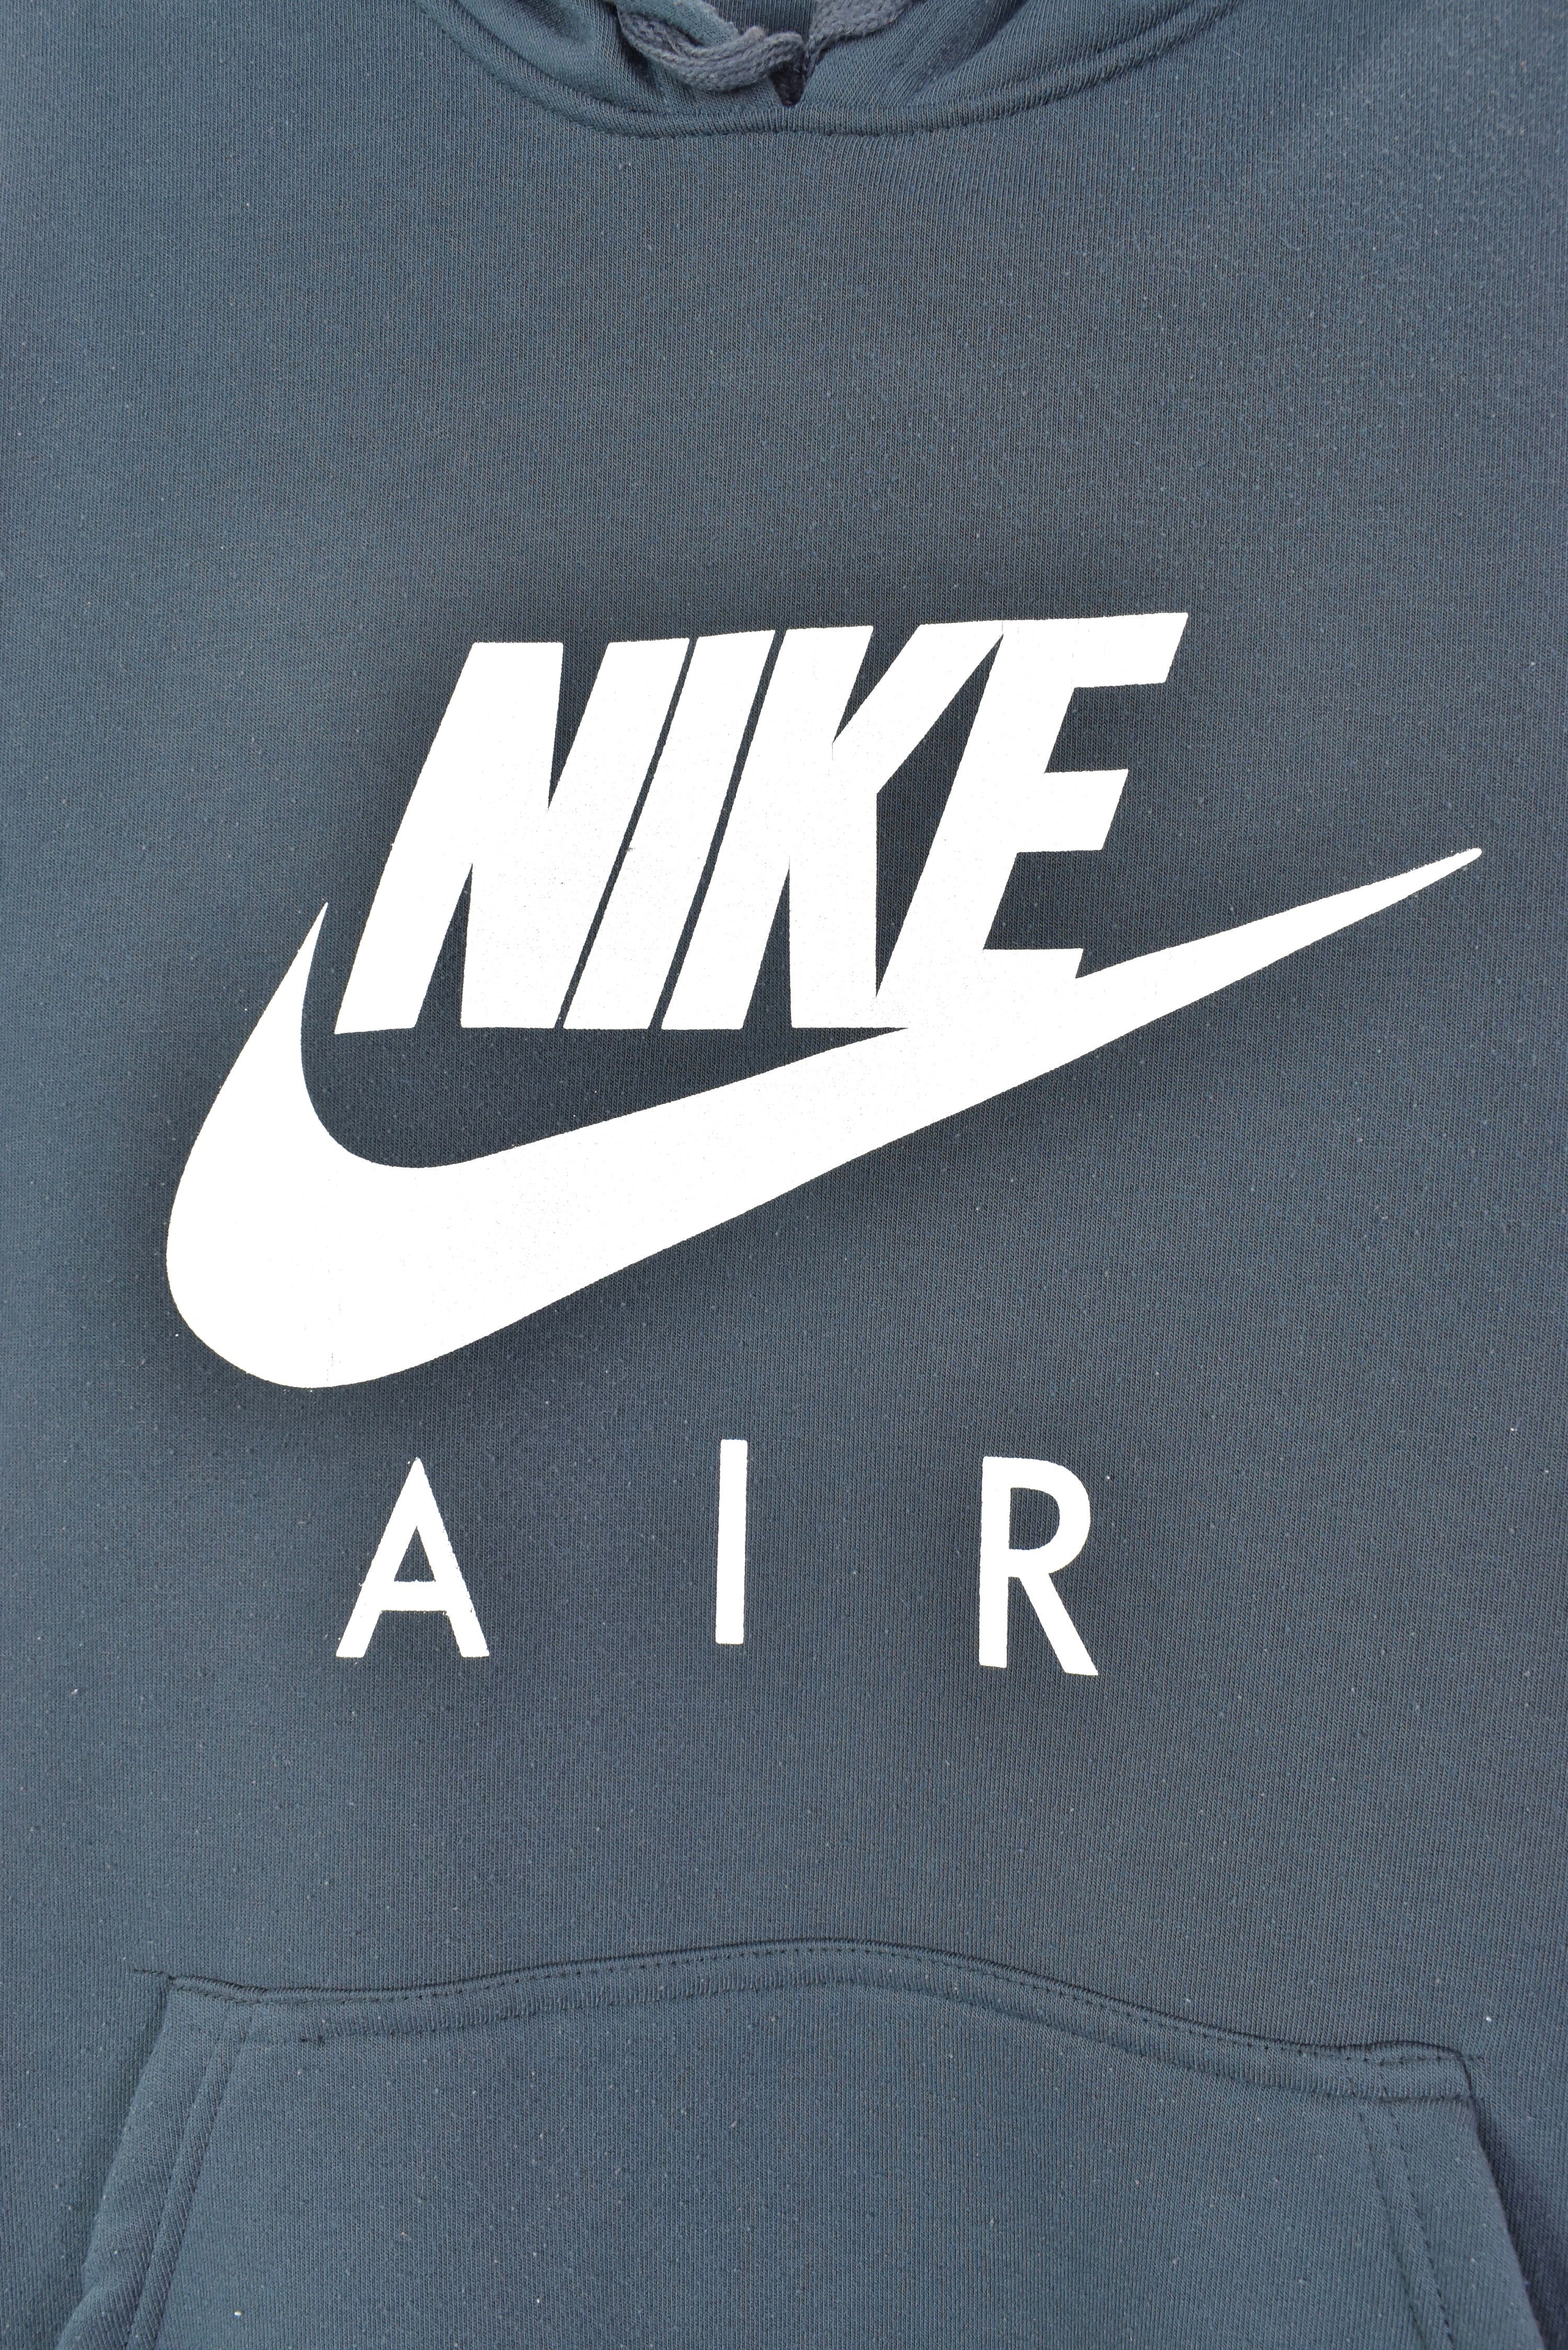 Vintage Nike hoodie, grey graphic sweatshirt - AU XL NIKE